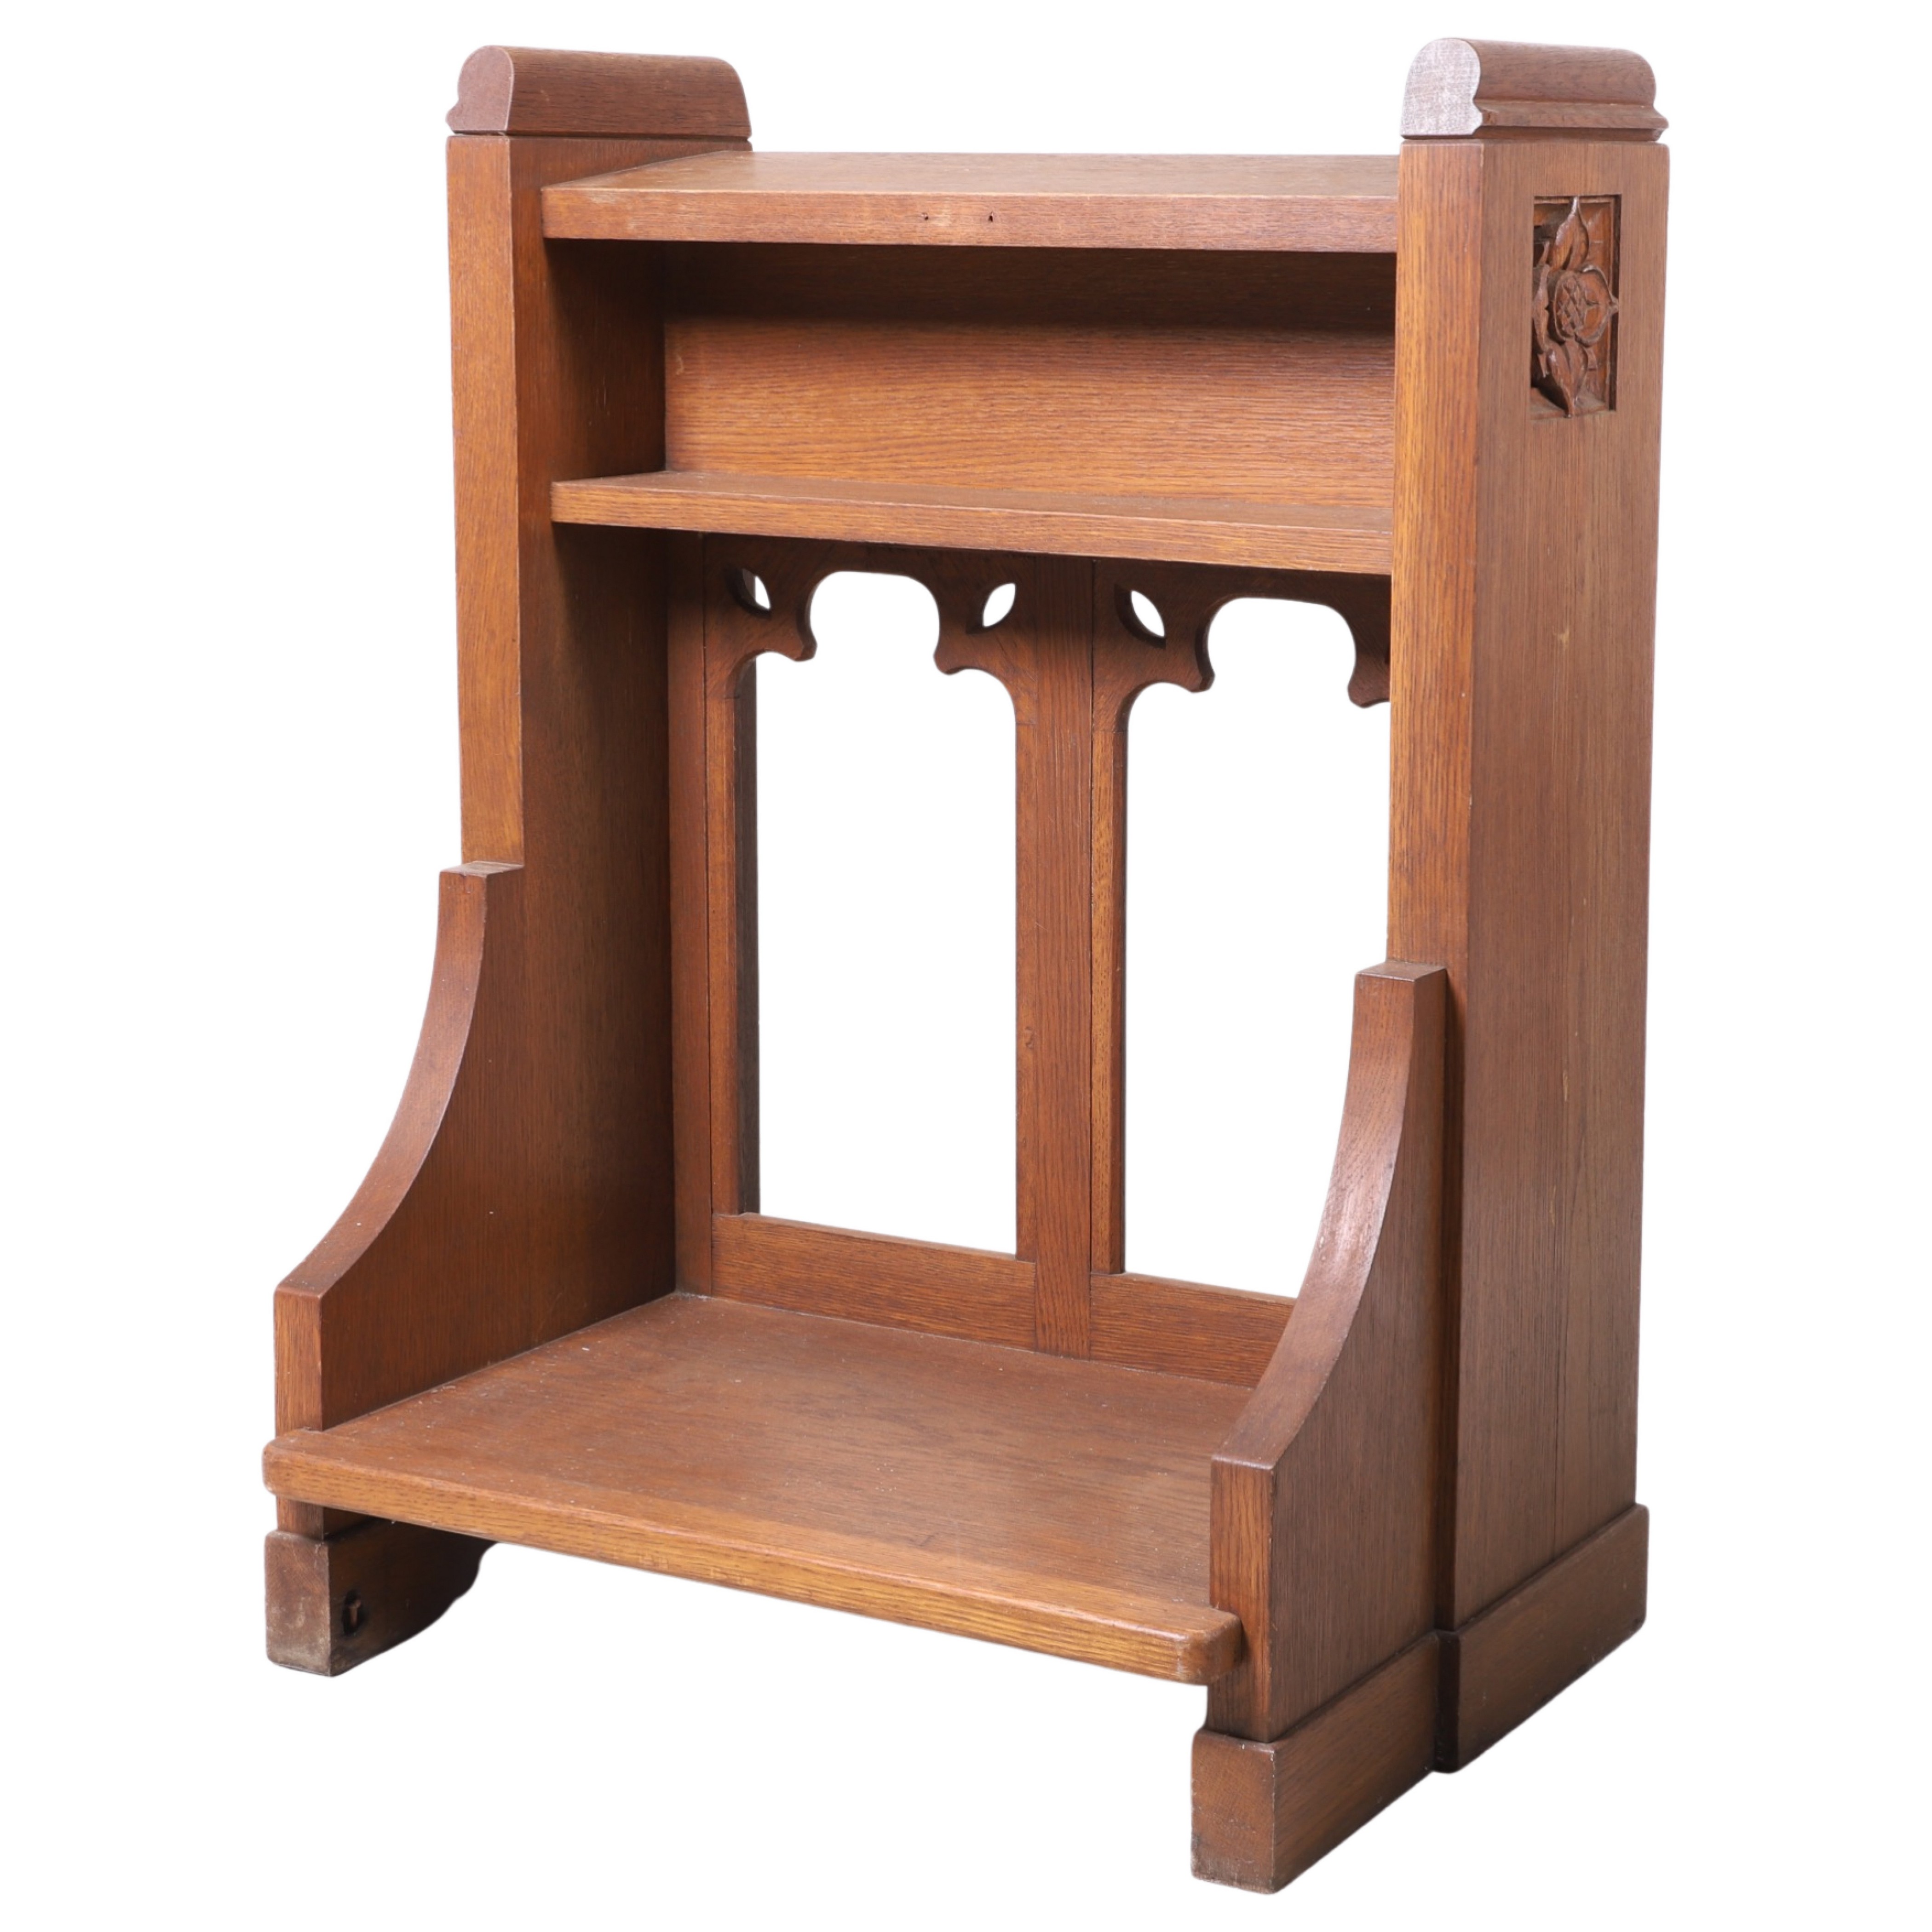 Carved oak pulpit, 36h x 25w x 20d